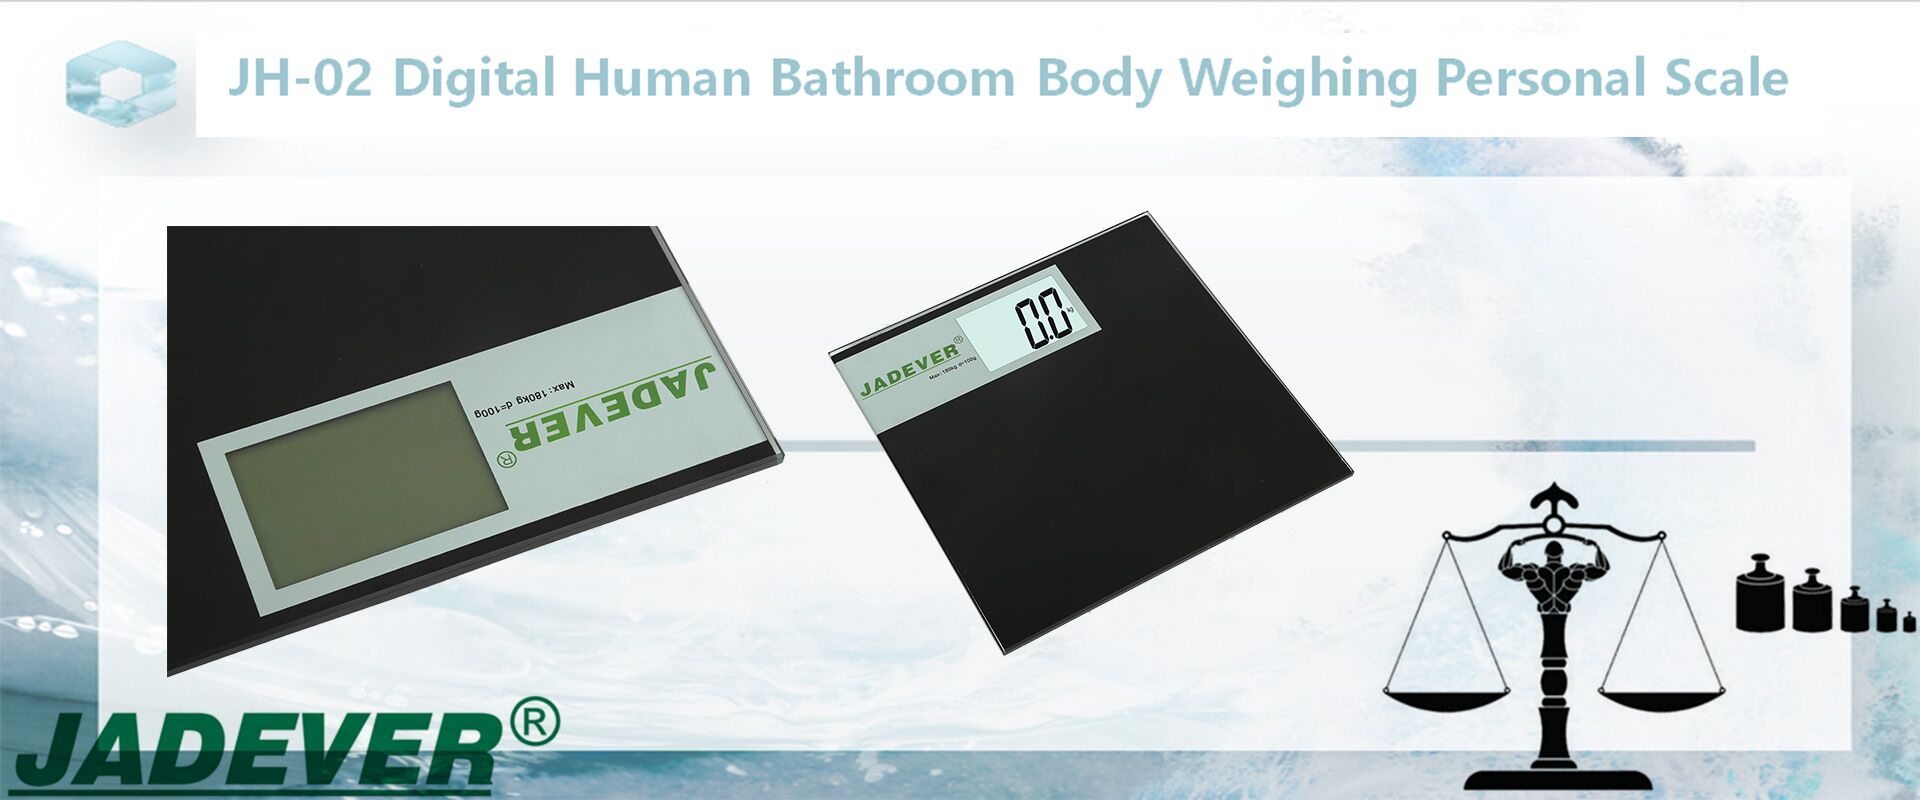 JH-02 Dijital İnsan Banyo Vücut Tartı Kişisel Baskül
